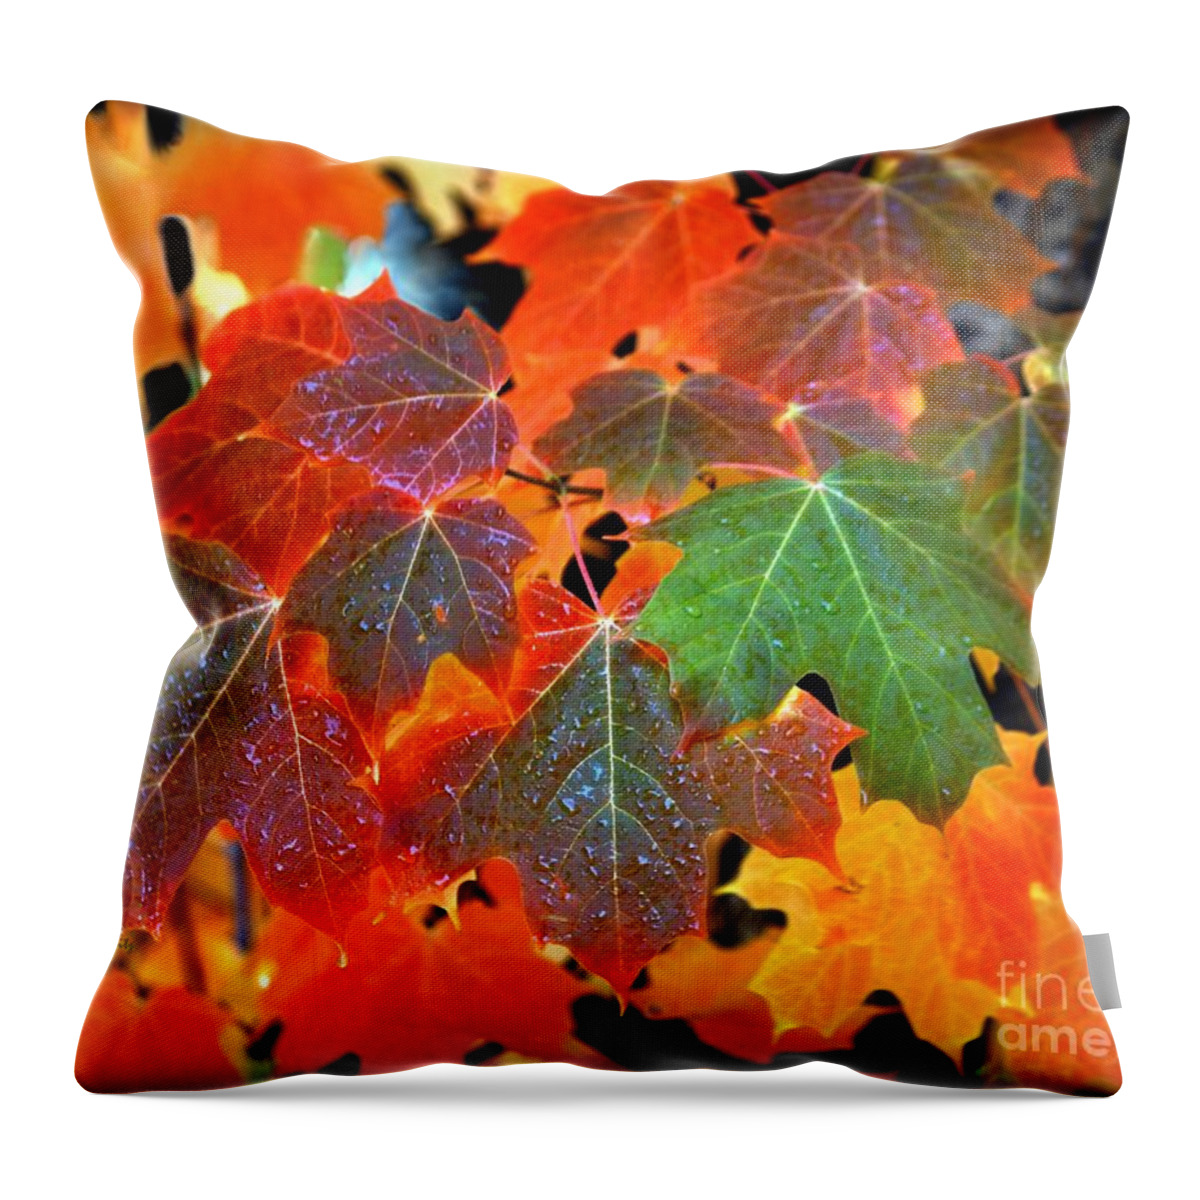 Autumn Leaf Progression Throw Pillow featuring the photograph Autumn Leaf Progression by Patrick Witz